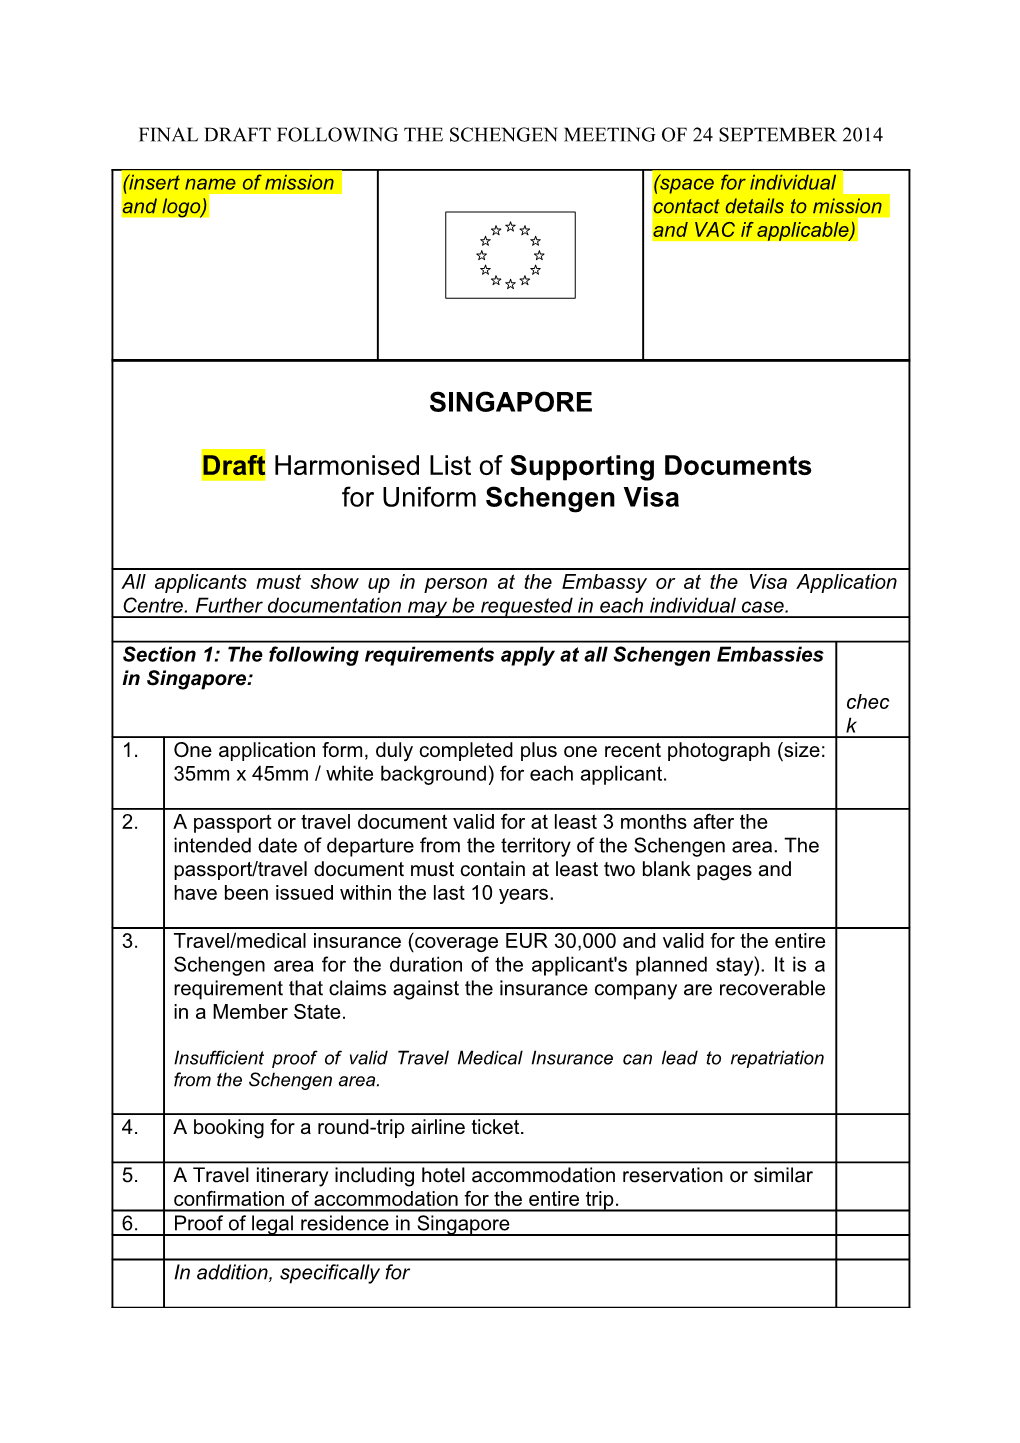 Final Draft Following the Schengen Meeting of 24 September 2014